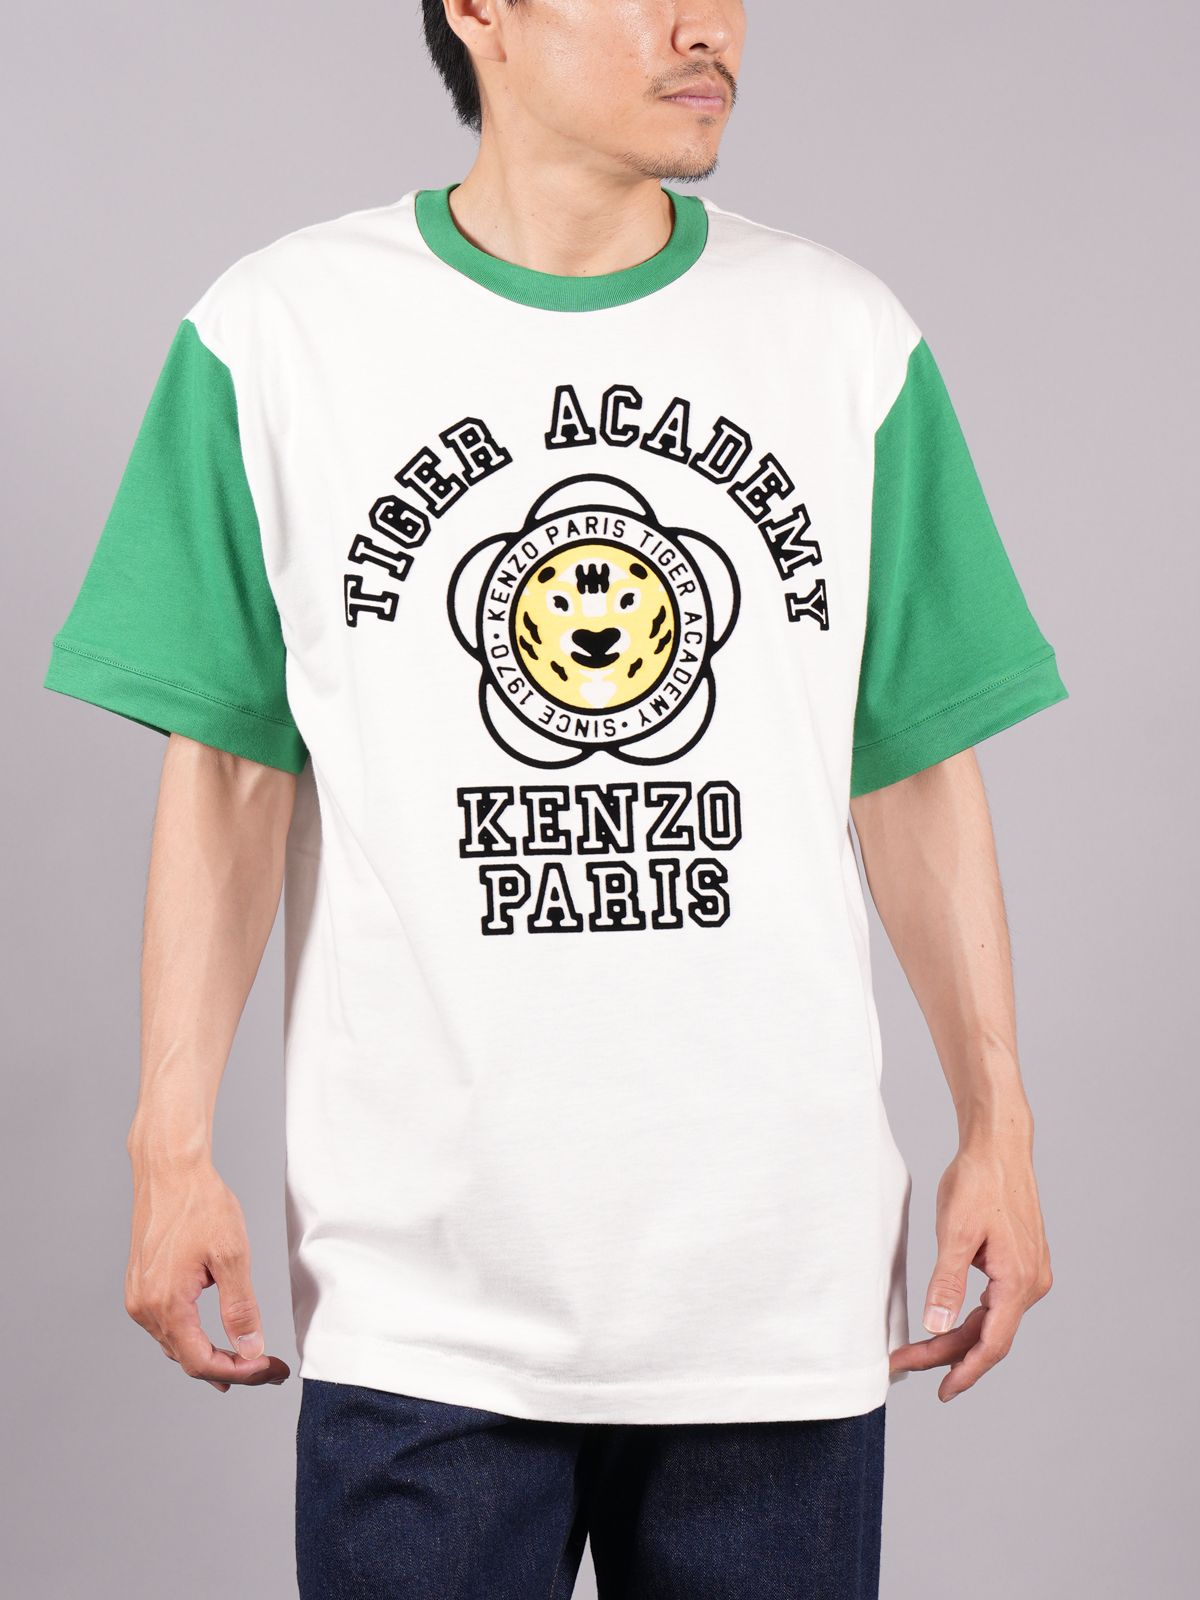 KENZO（ケンゾー）☆タイガー Tシャツ メンズ ブラック Mサイズ